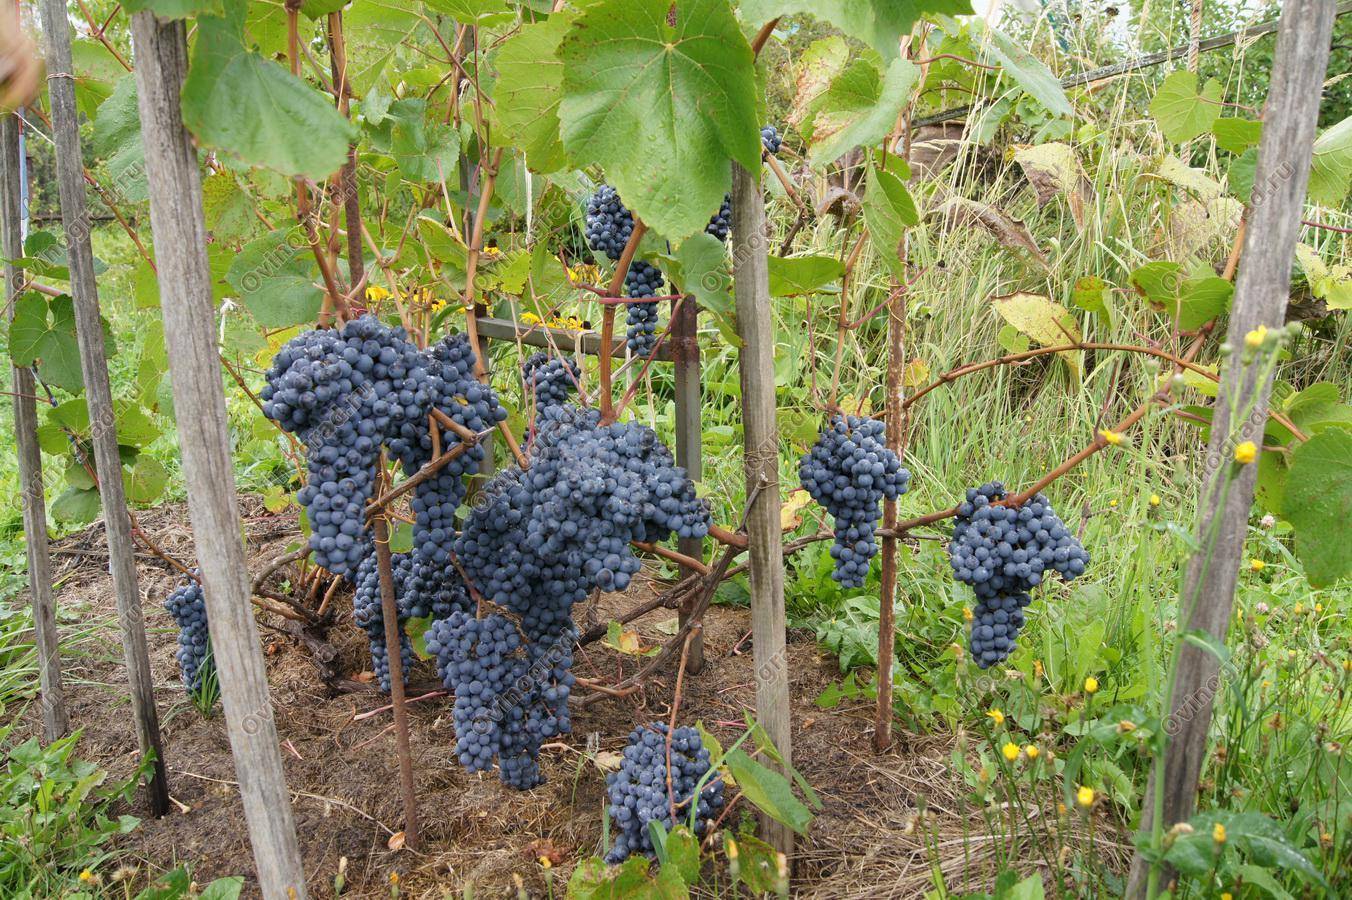 Описание сорта памяти домбковской — фото винограда, отзывы садоводов